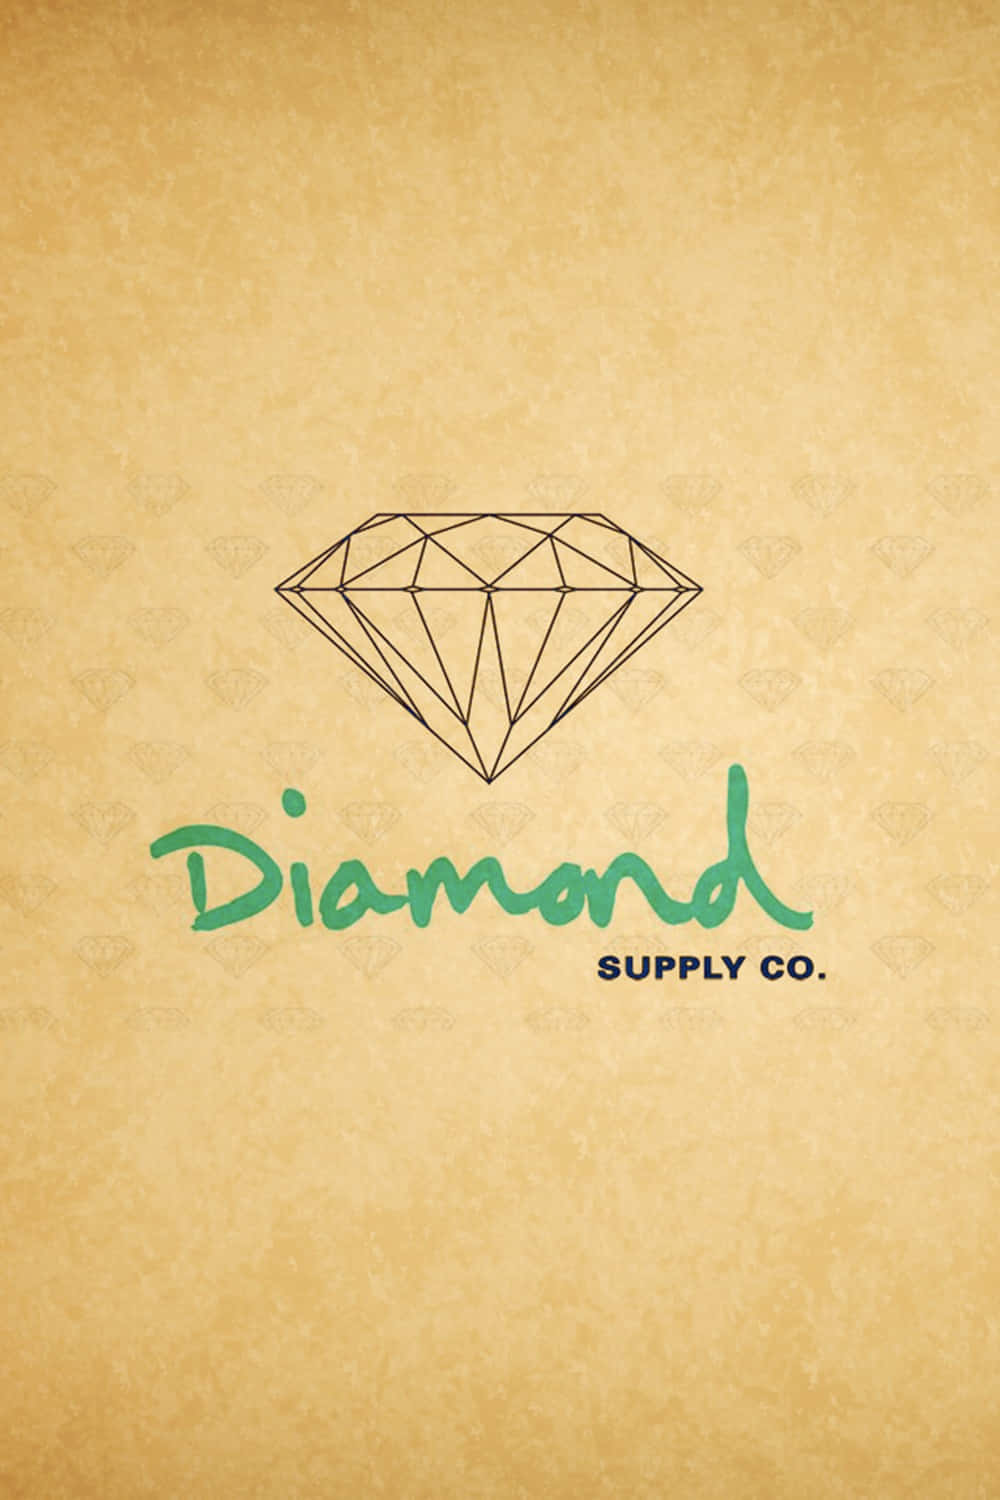 Logotipodiamond Supply Co Papel de Parede